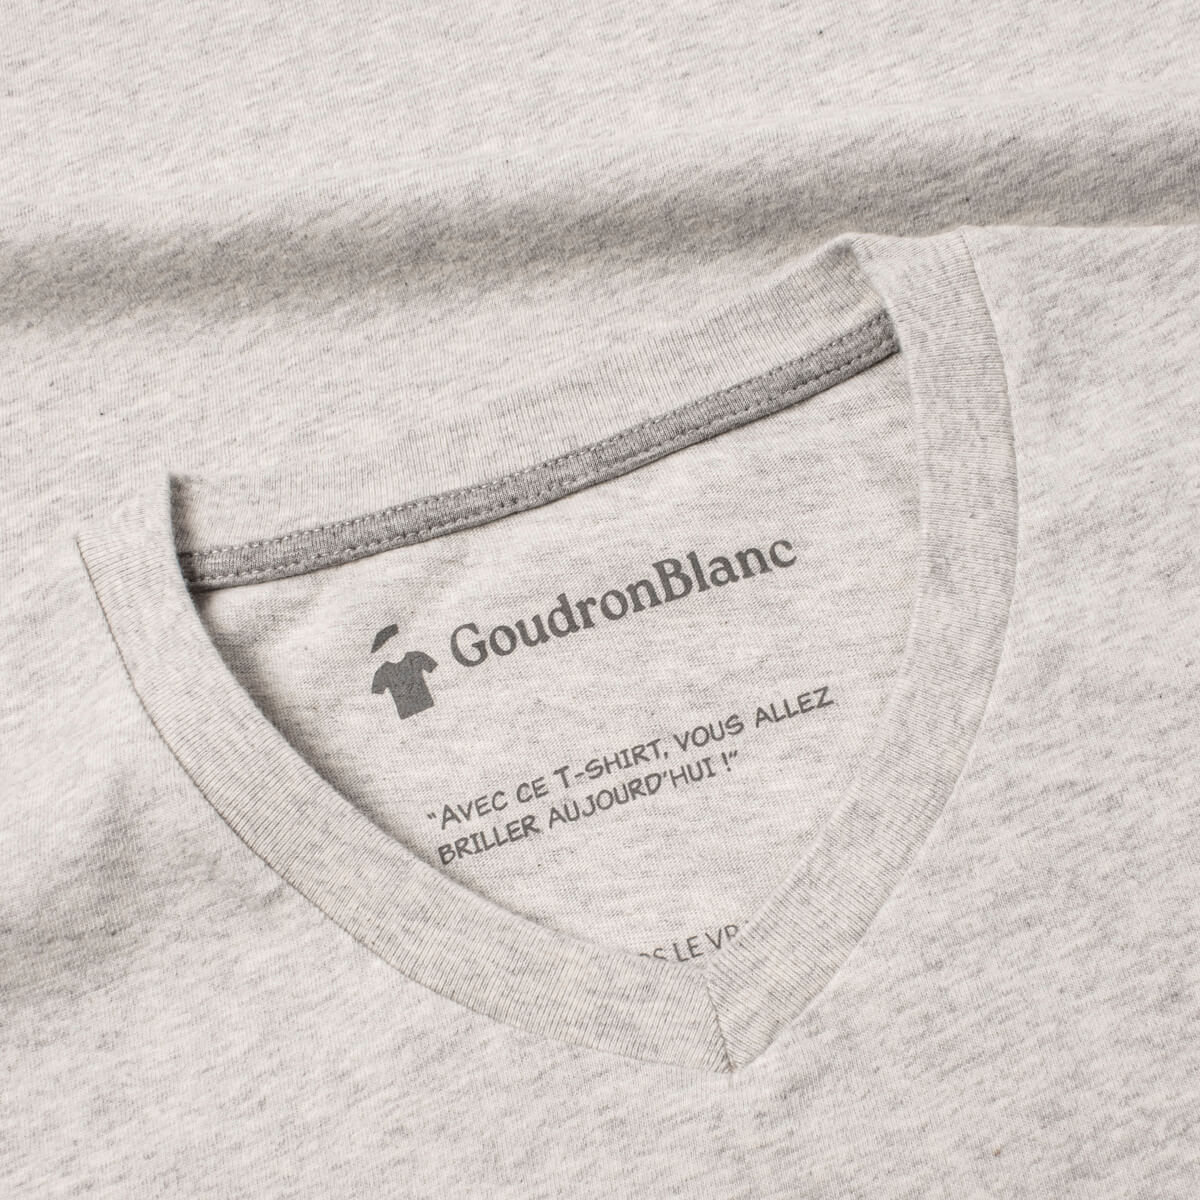 Encolure du T-shirt col V gris sable - GoudronBlanc